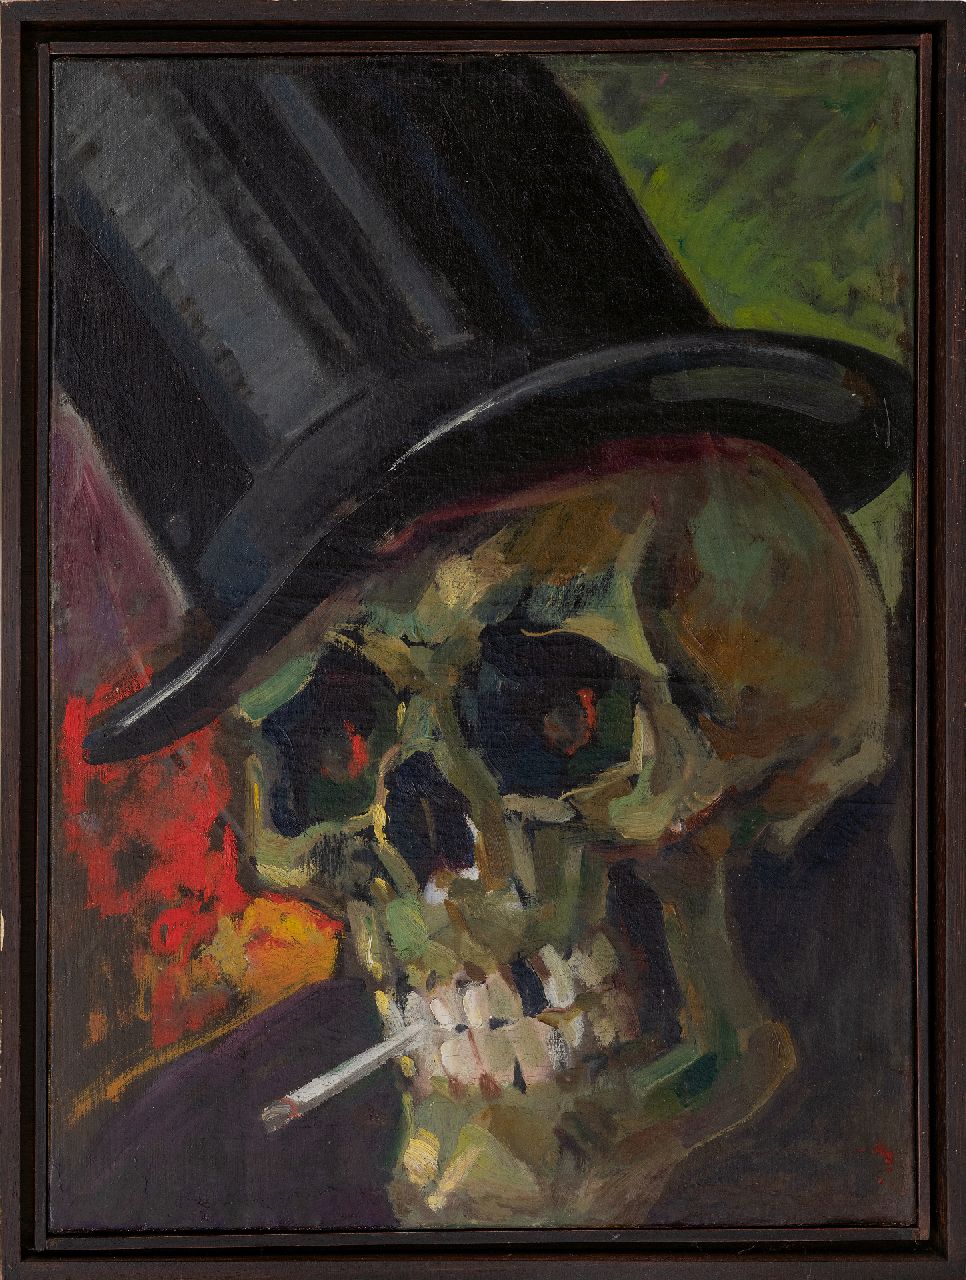 Hollandse School, ca. 1900   | Hollandse School, ca. 1900 | Schilderijen te koop aangeboden | Schedel met brandende sigaret en hoge hoed (memento mori), olieverf op doek 59,9 x 44,8 cm, gesigneerd Ch. Brees en 1892